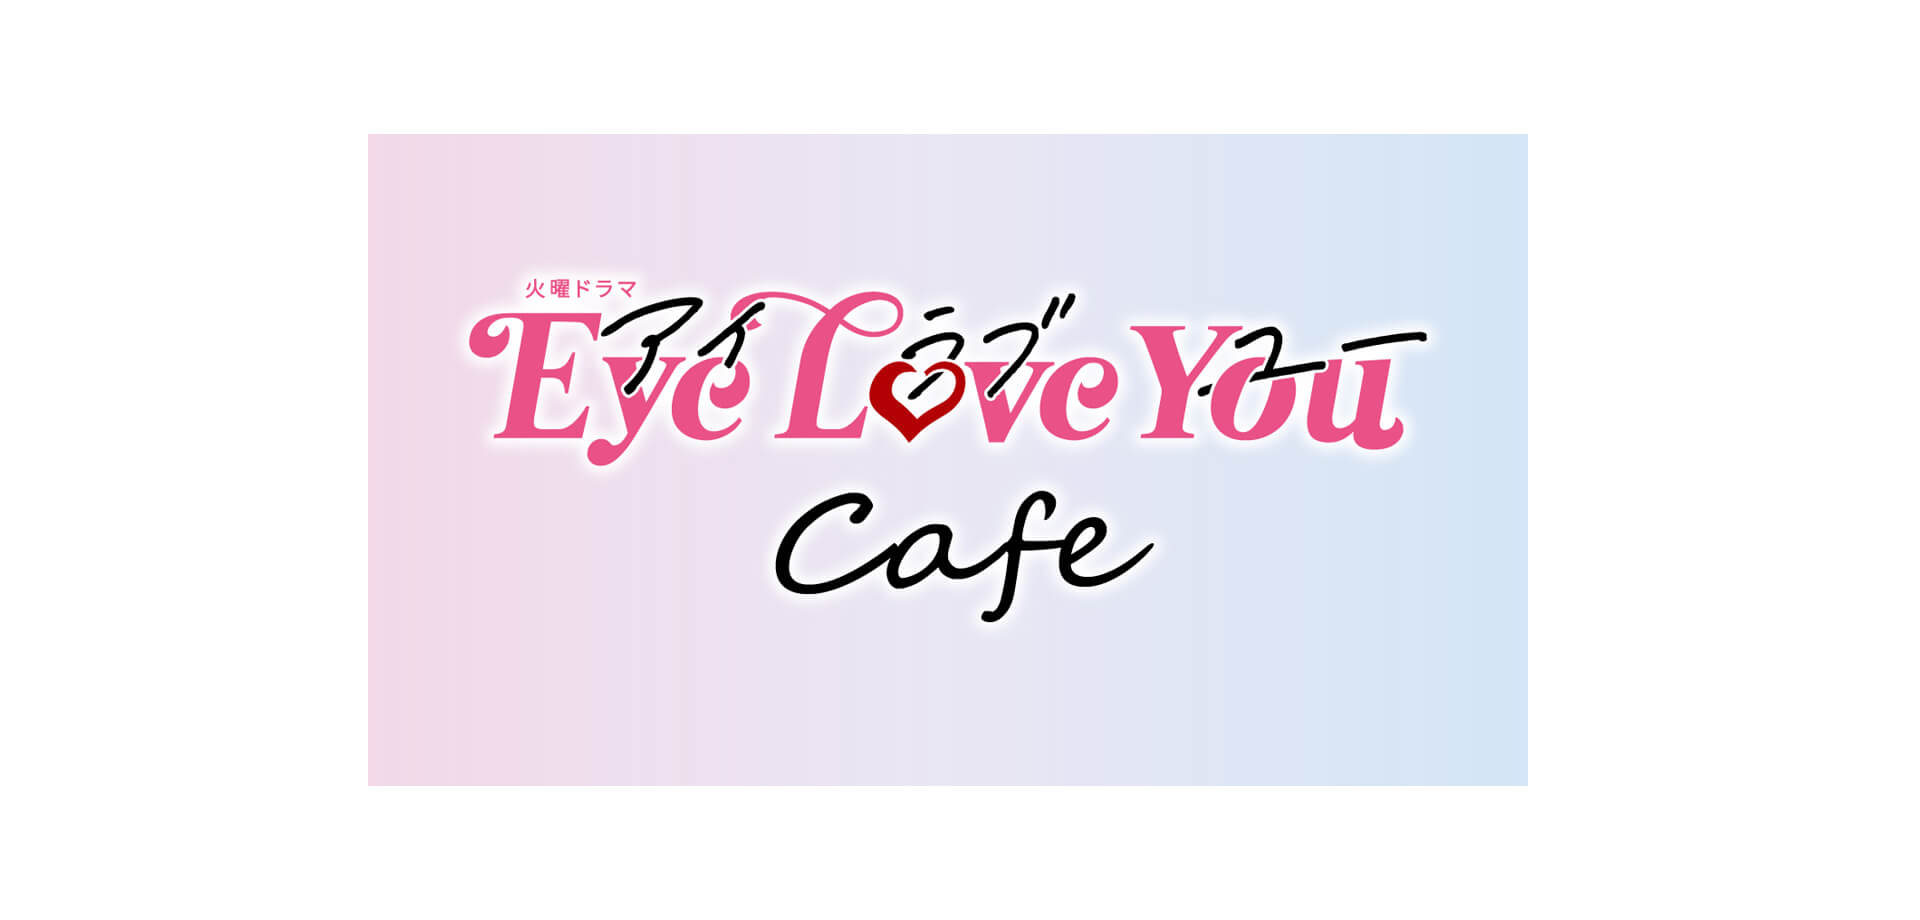 火曜ドラマ『Eye Love You』 Cafe」ロゴ